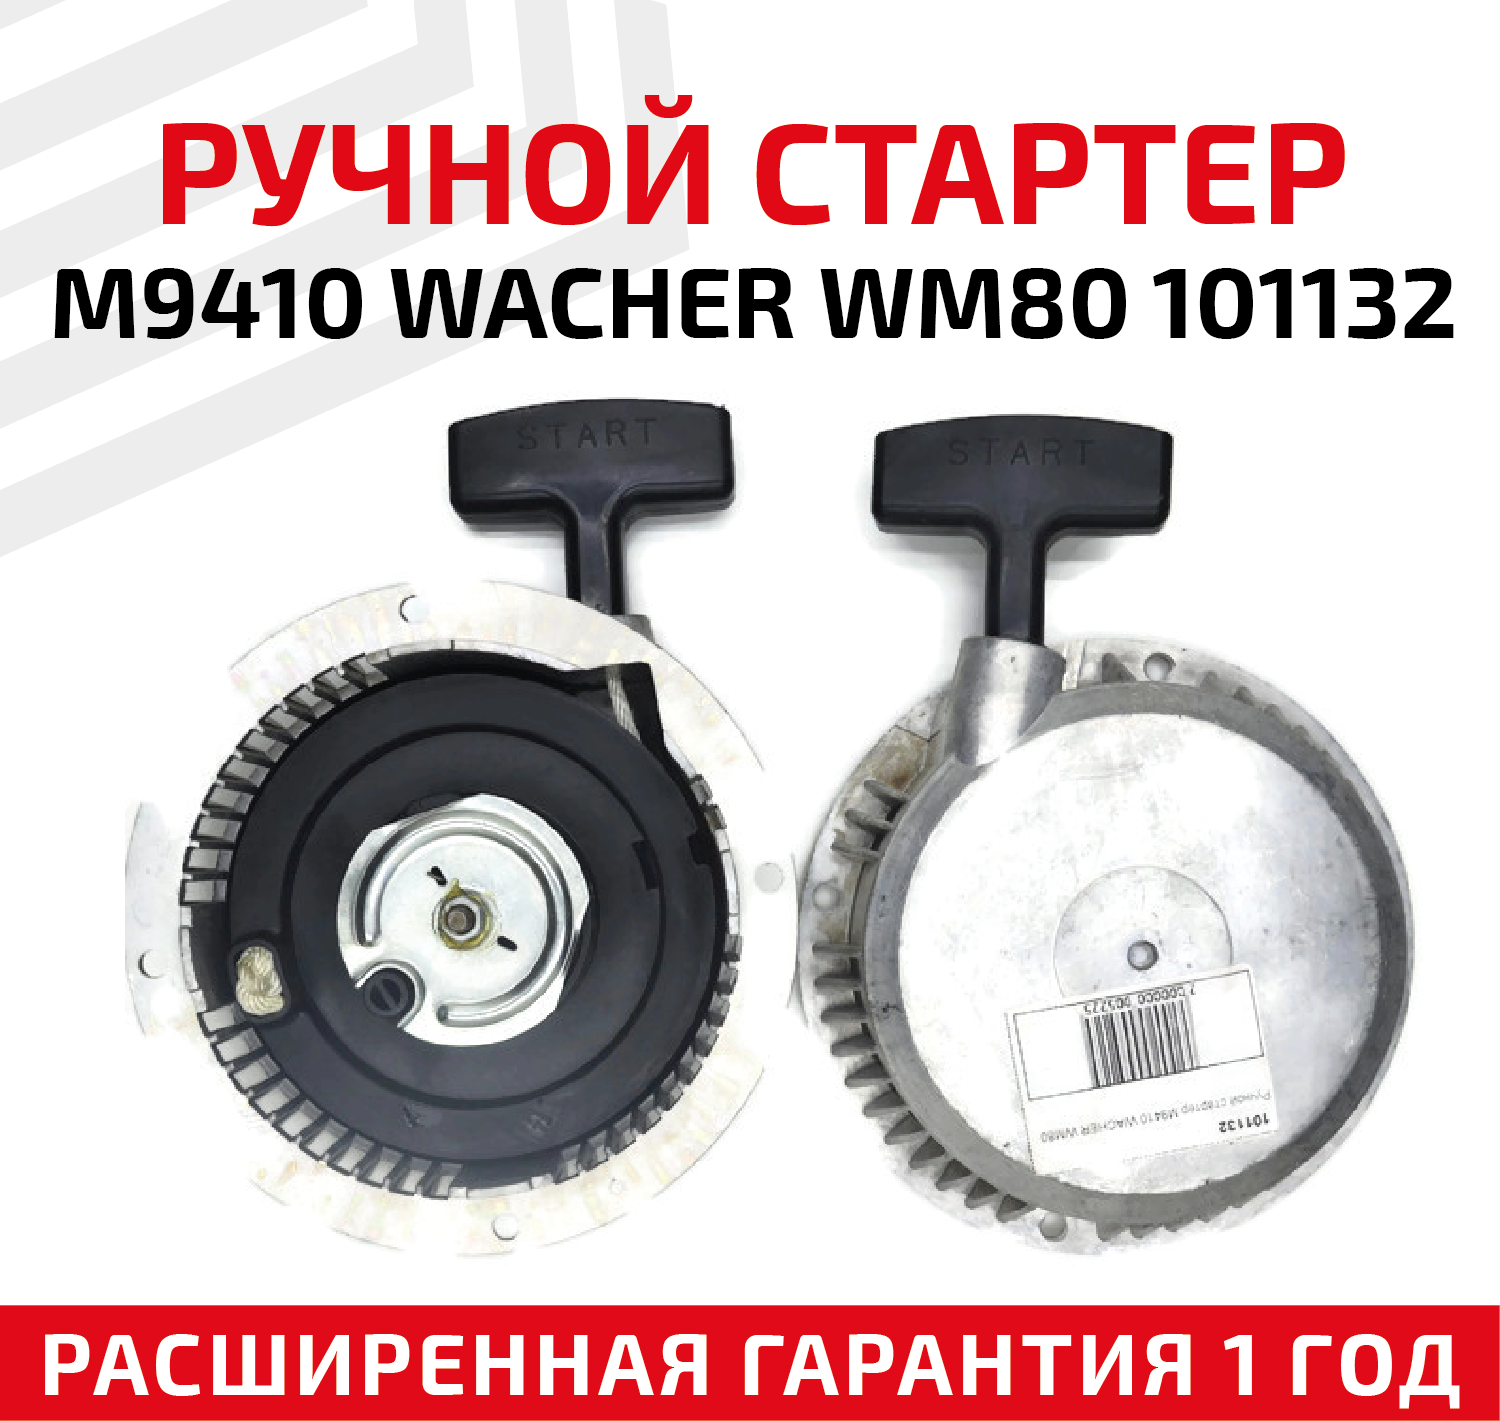 Ручной стартер M9410 WACHER WM80 101132